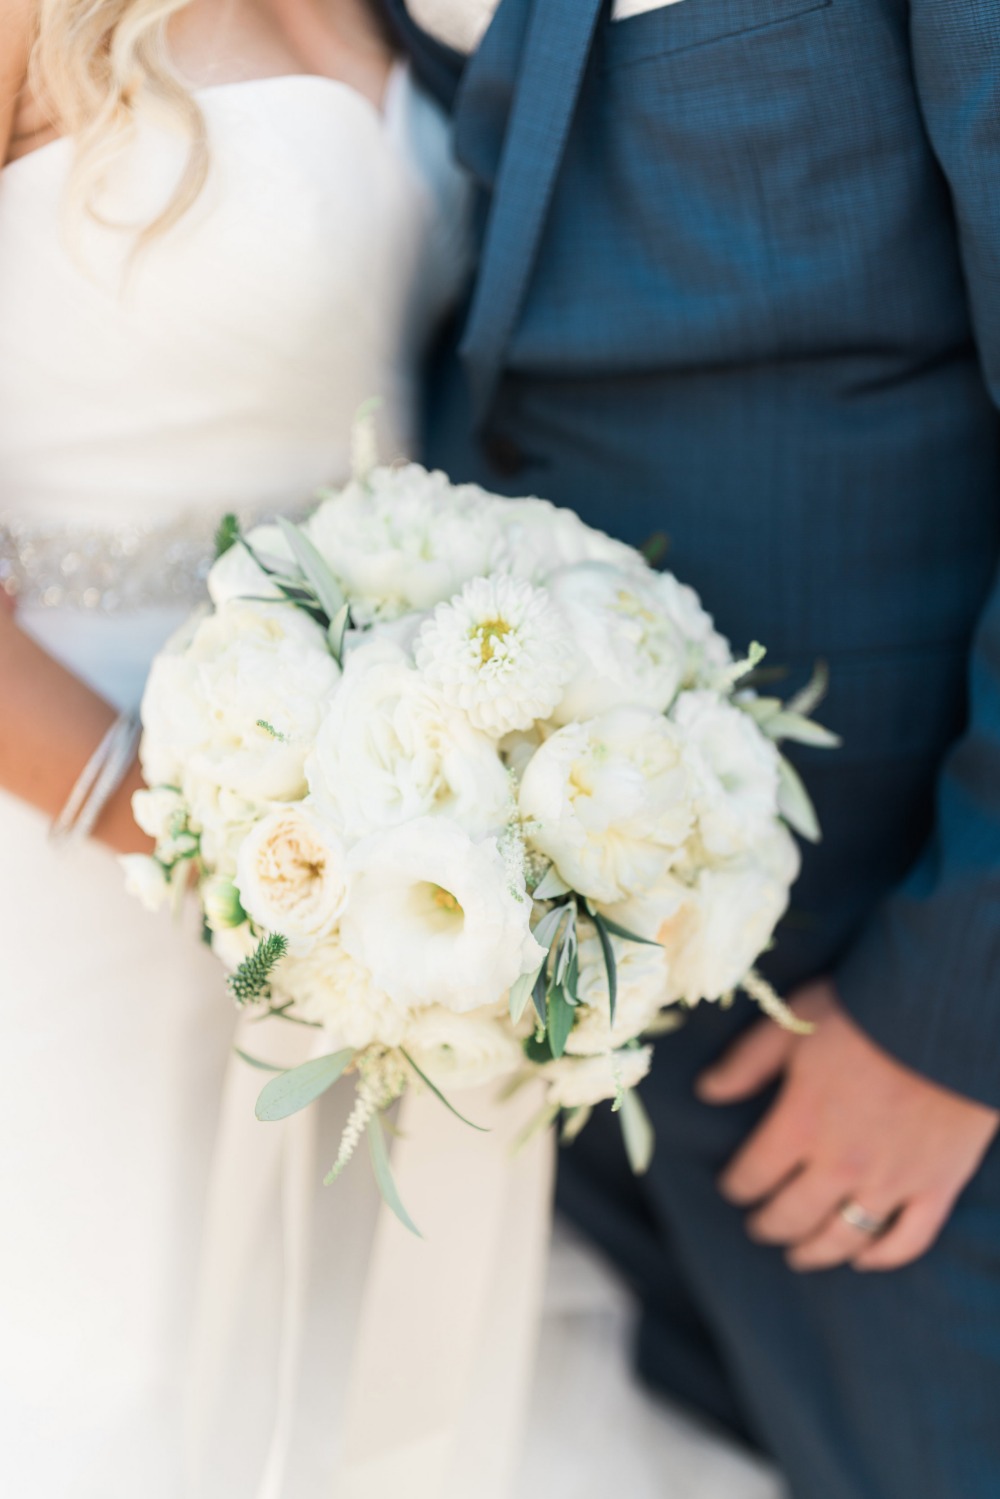 White wedding bouquet